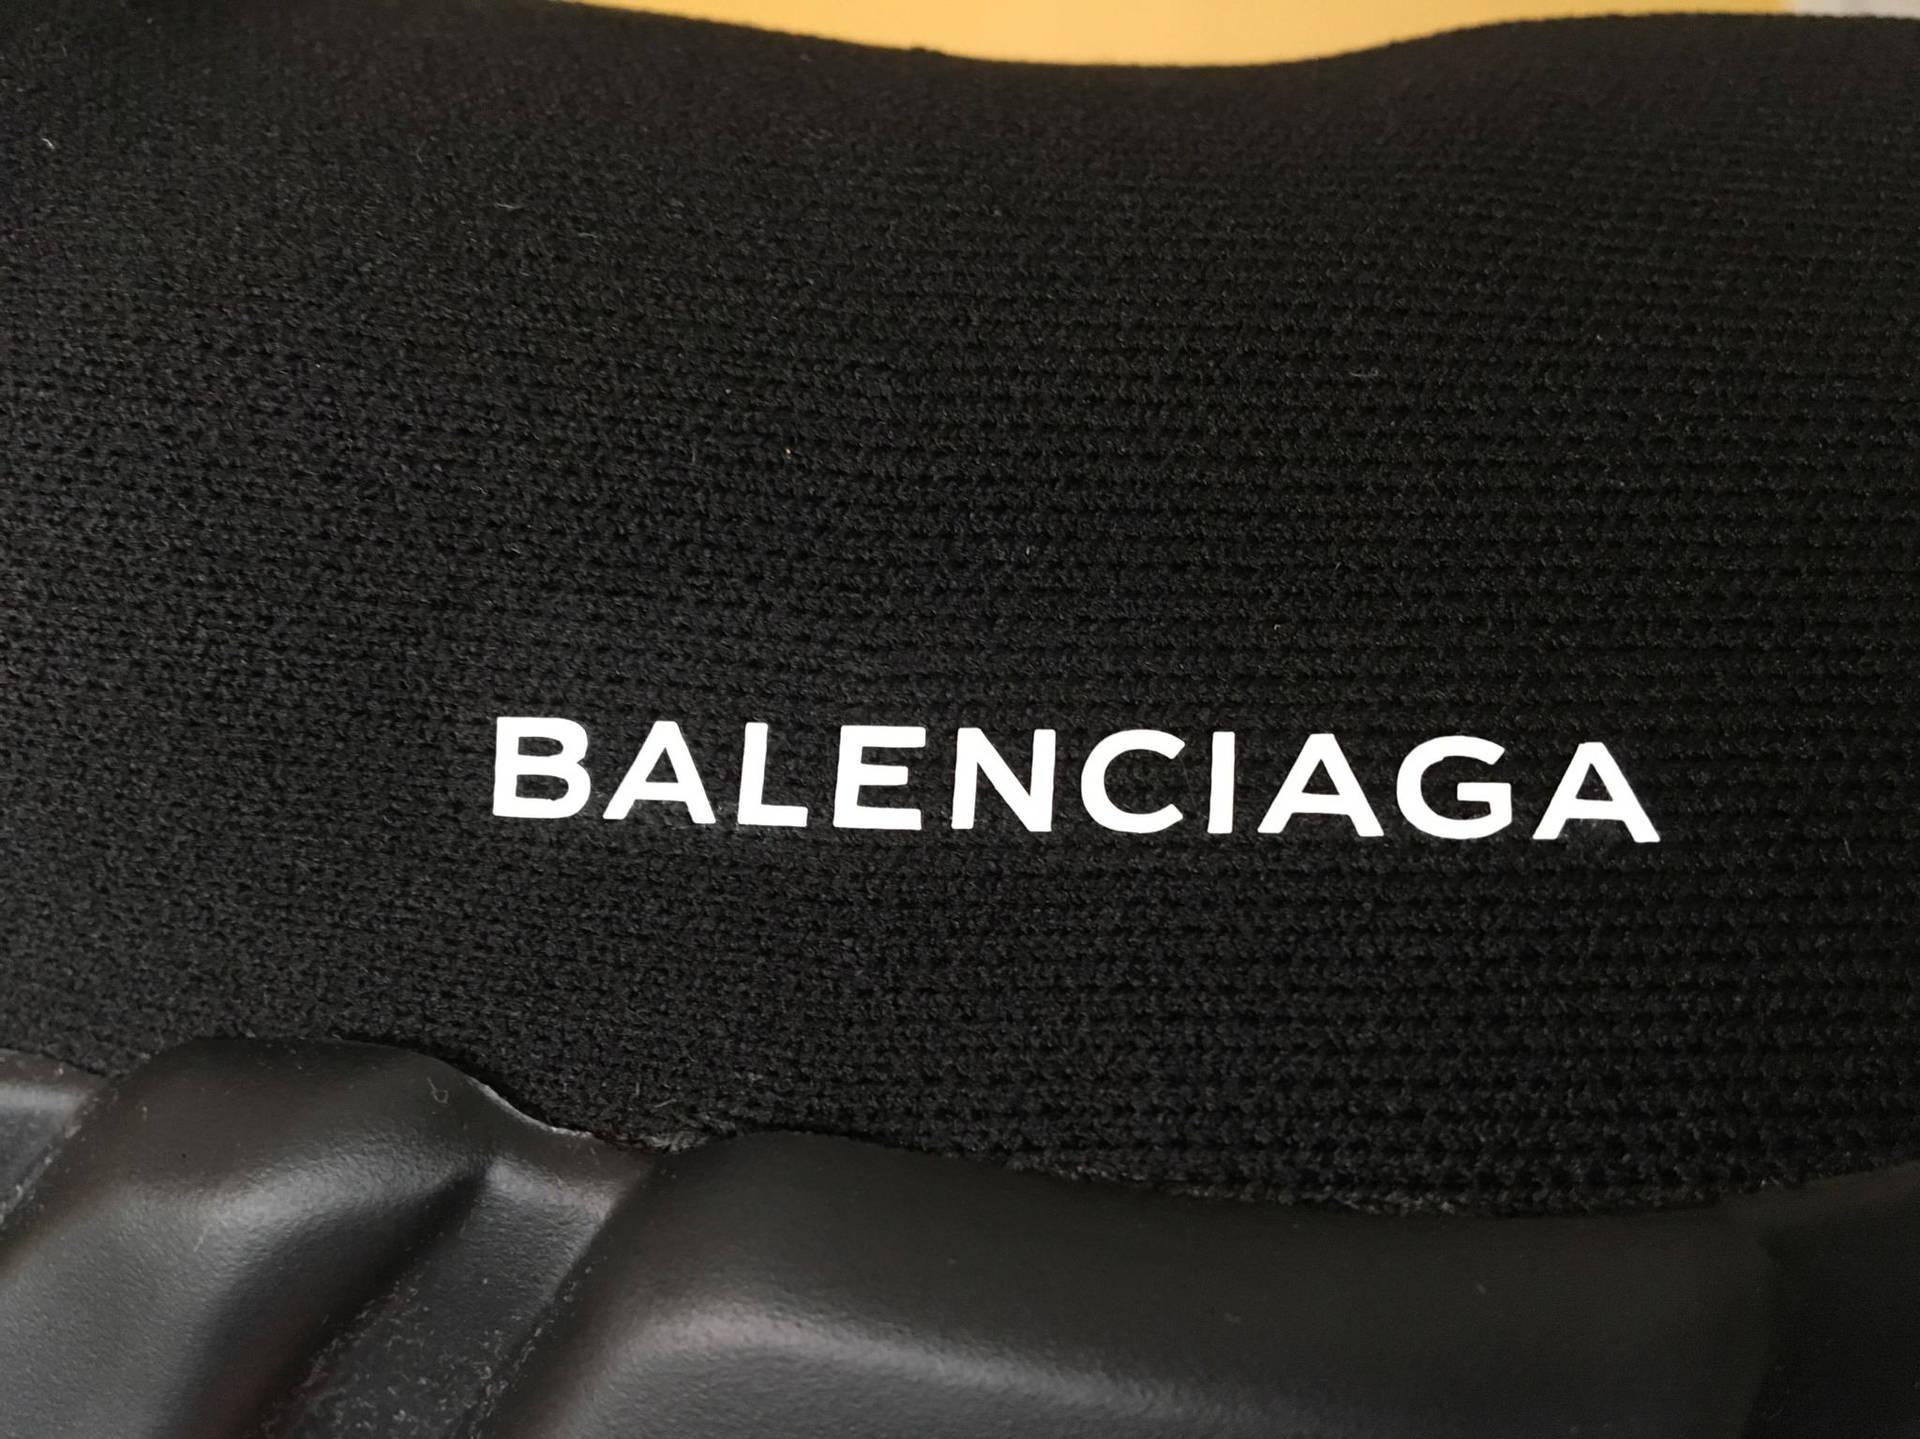 Download Balenciaga Black Mat Wallpaper